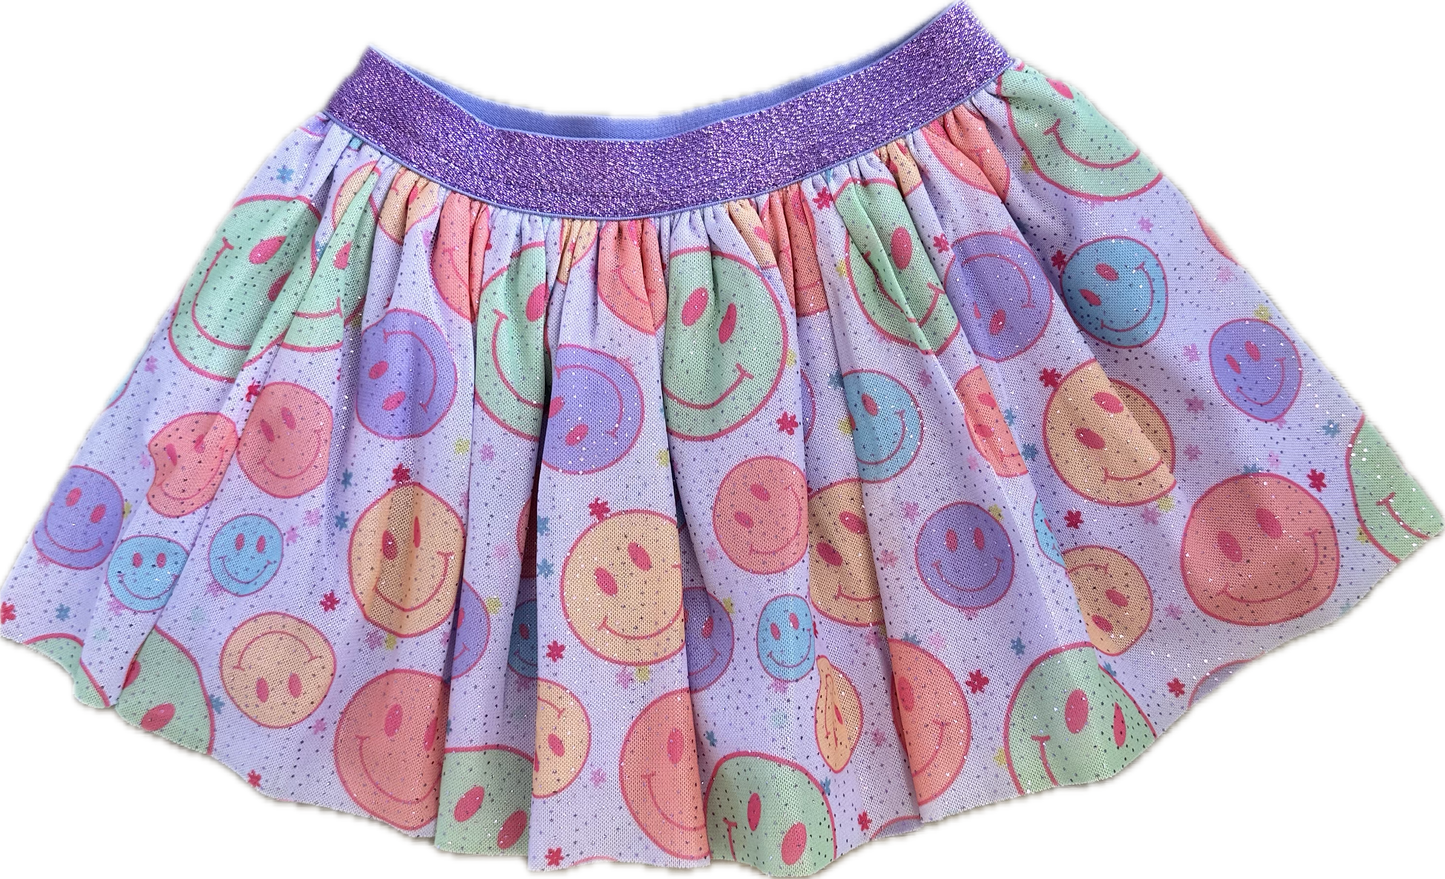 Smiley Face Tutu - Dress Up Skirt - Kids Tutu